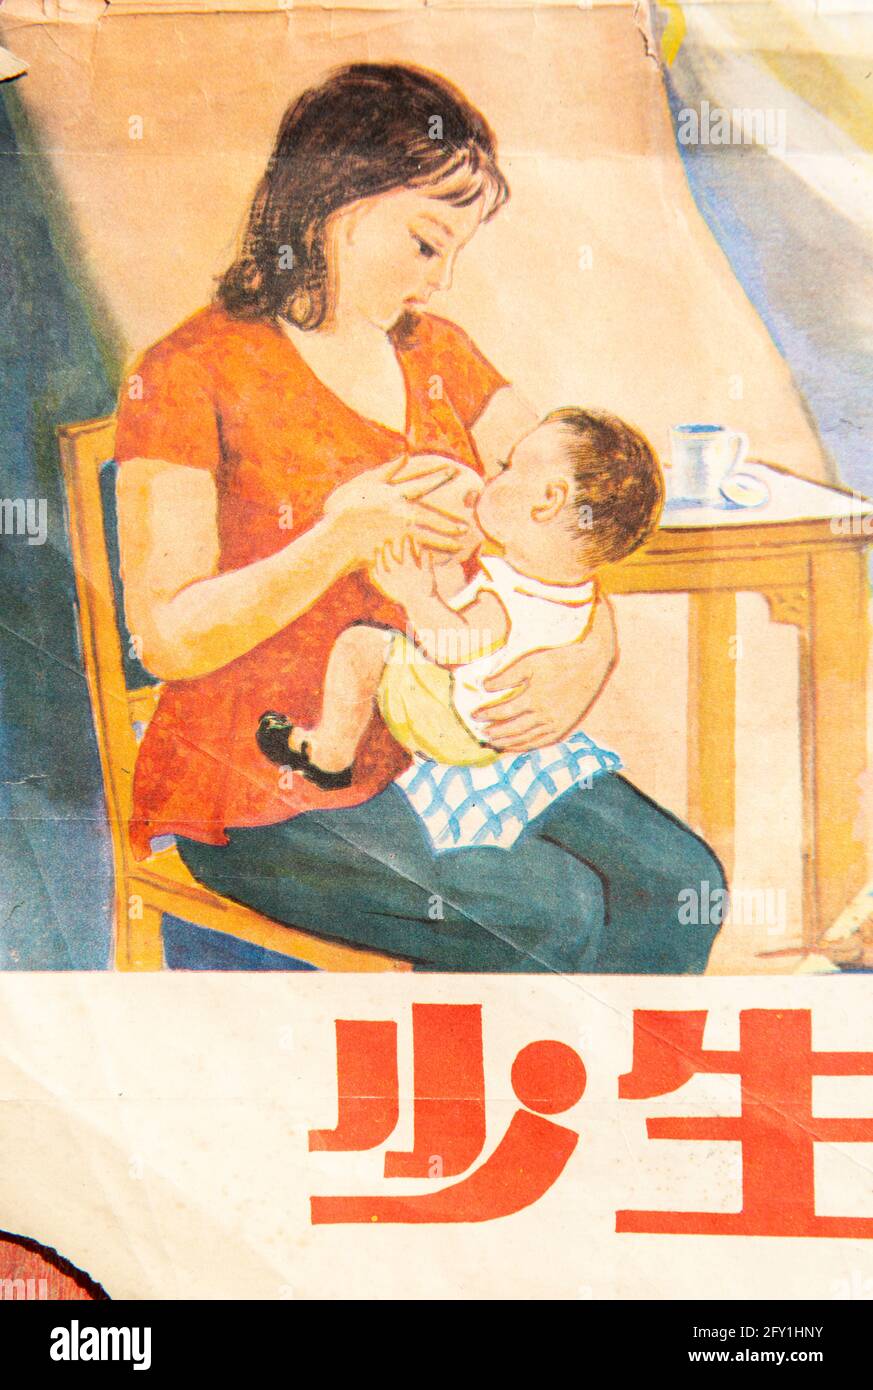 Un poster di una politica per l'infanzia in Cina negli anni '80. Caratteri cinesi significa "meno parto". Foto Stock